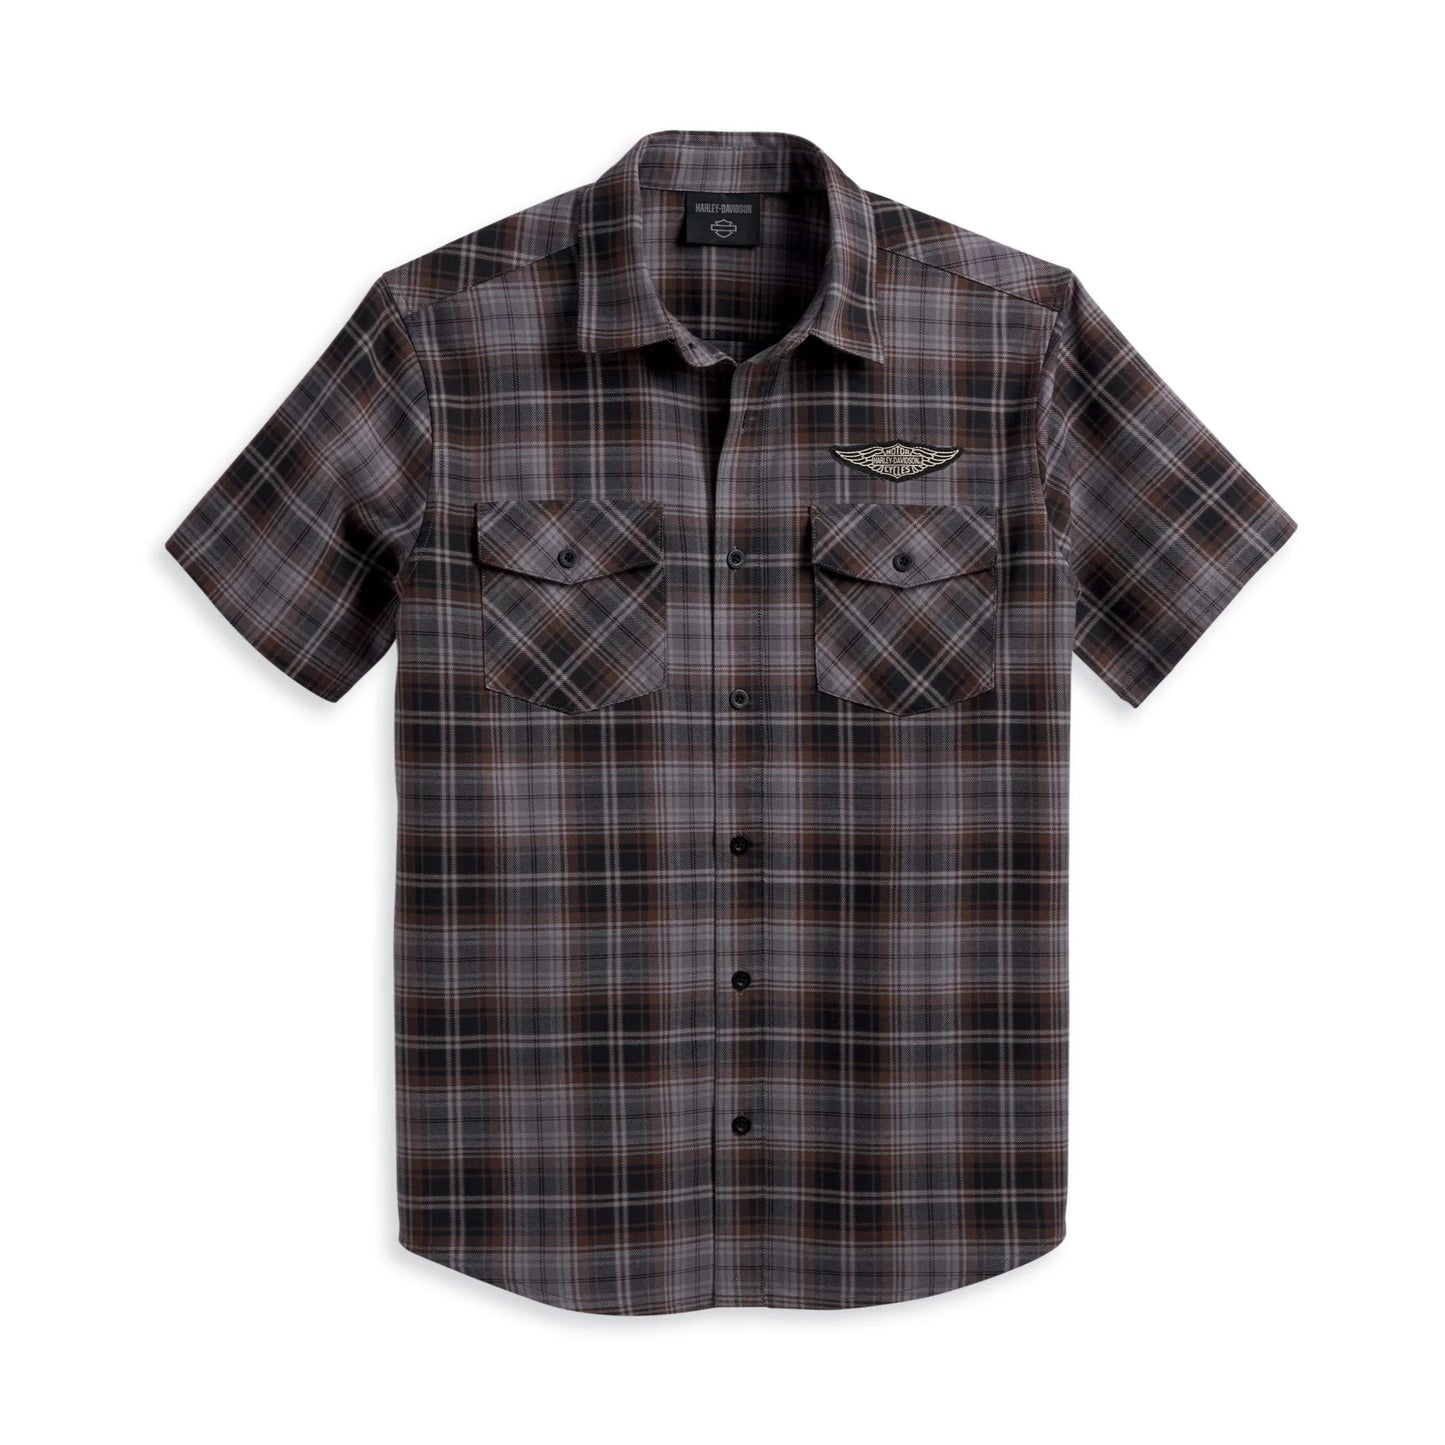 Harley-Davidson® Men's Oval Path Shirt - Black Plaid